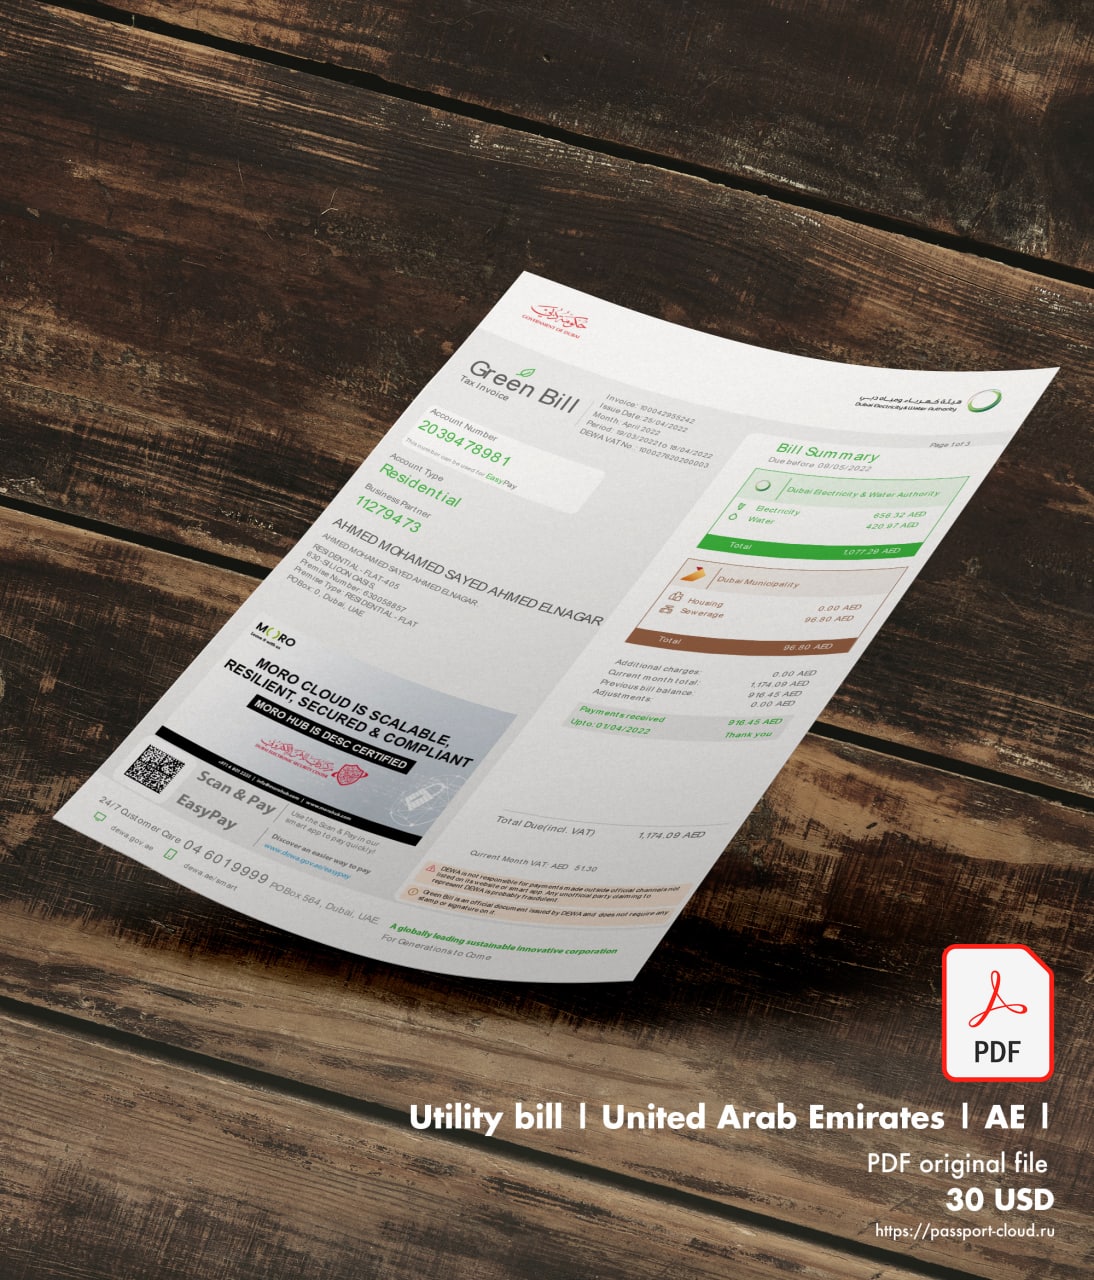 Utility bill | Green Bill | Emirates |-0